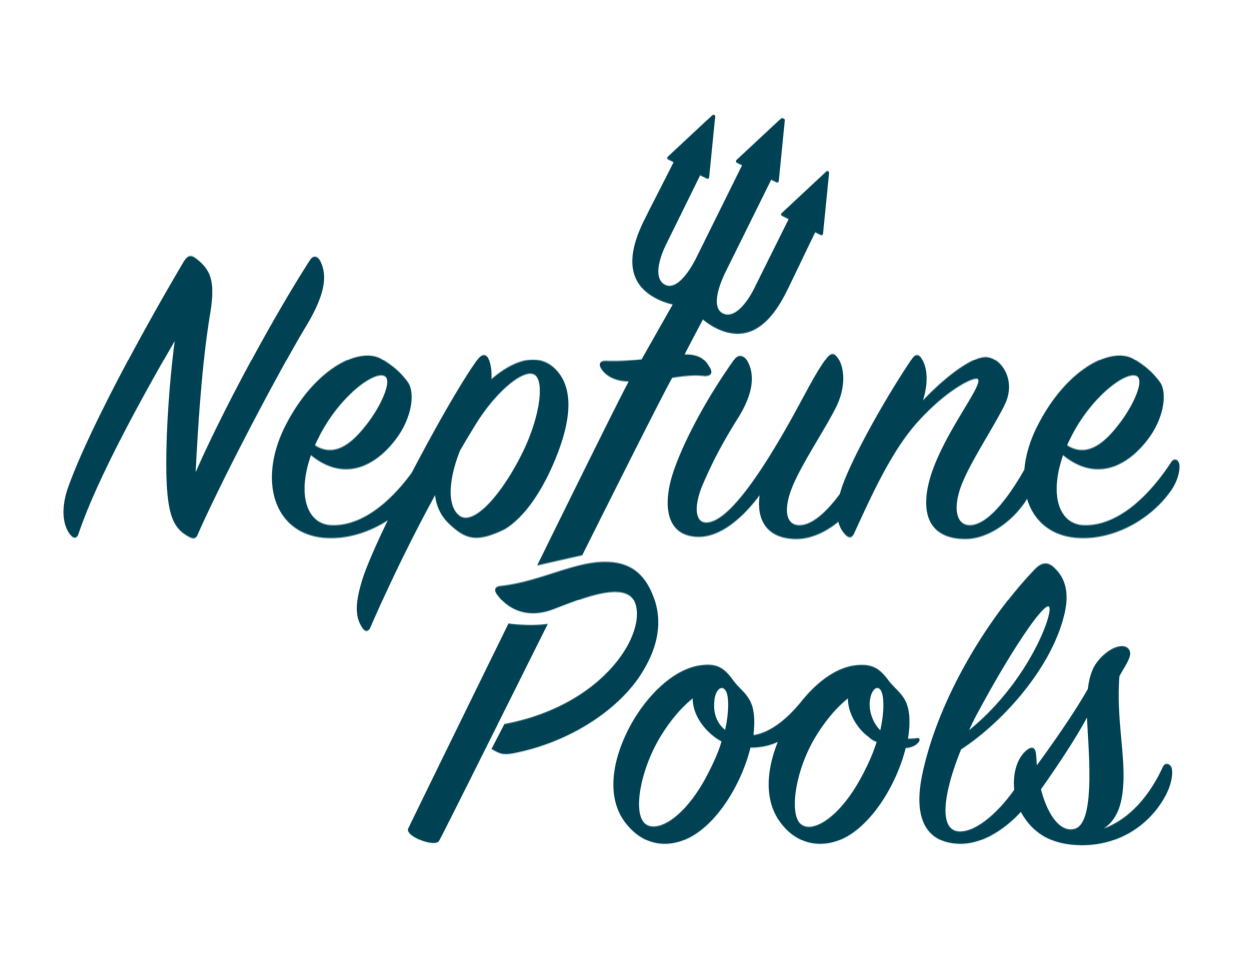 Neptune Pools Logo